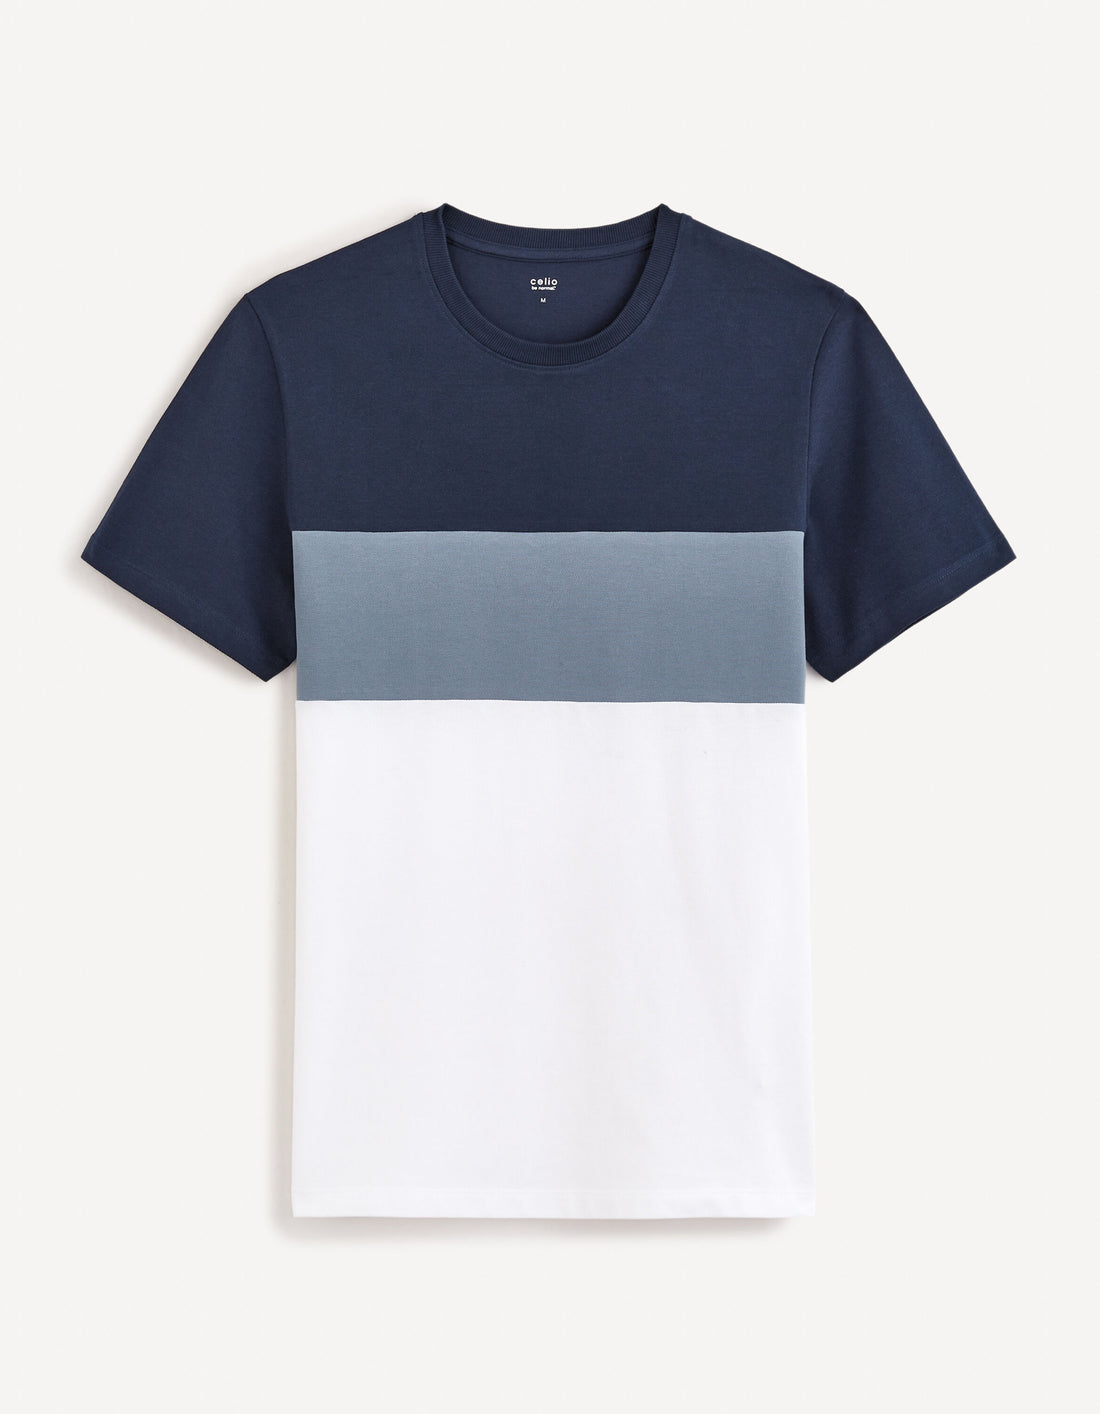 100% Cotton Round Neck T-Shirt - Navy_FEBLOC_NAVY_01